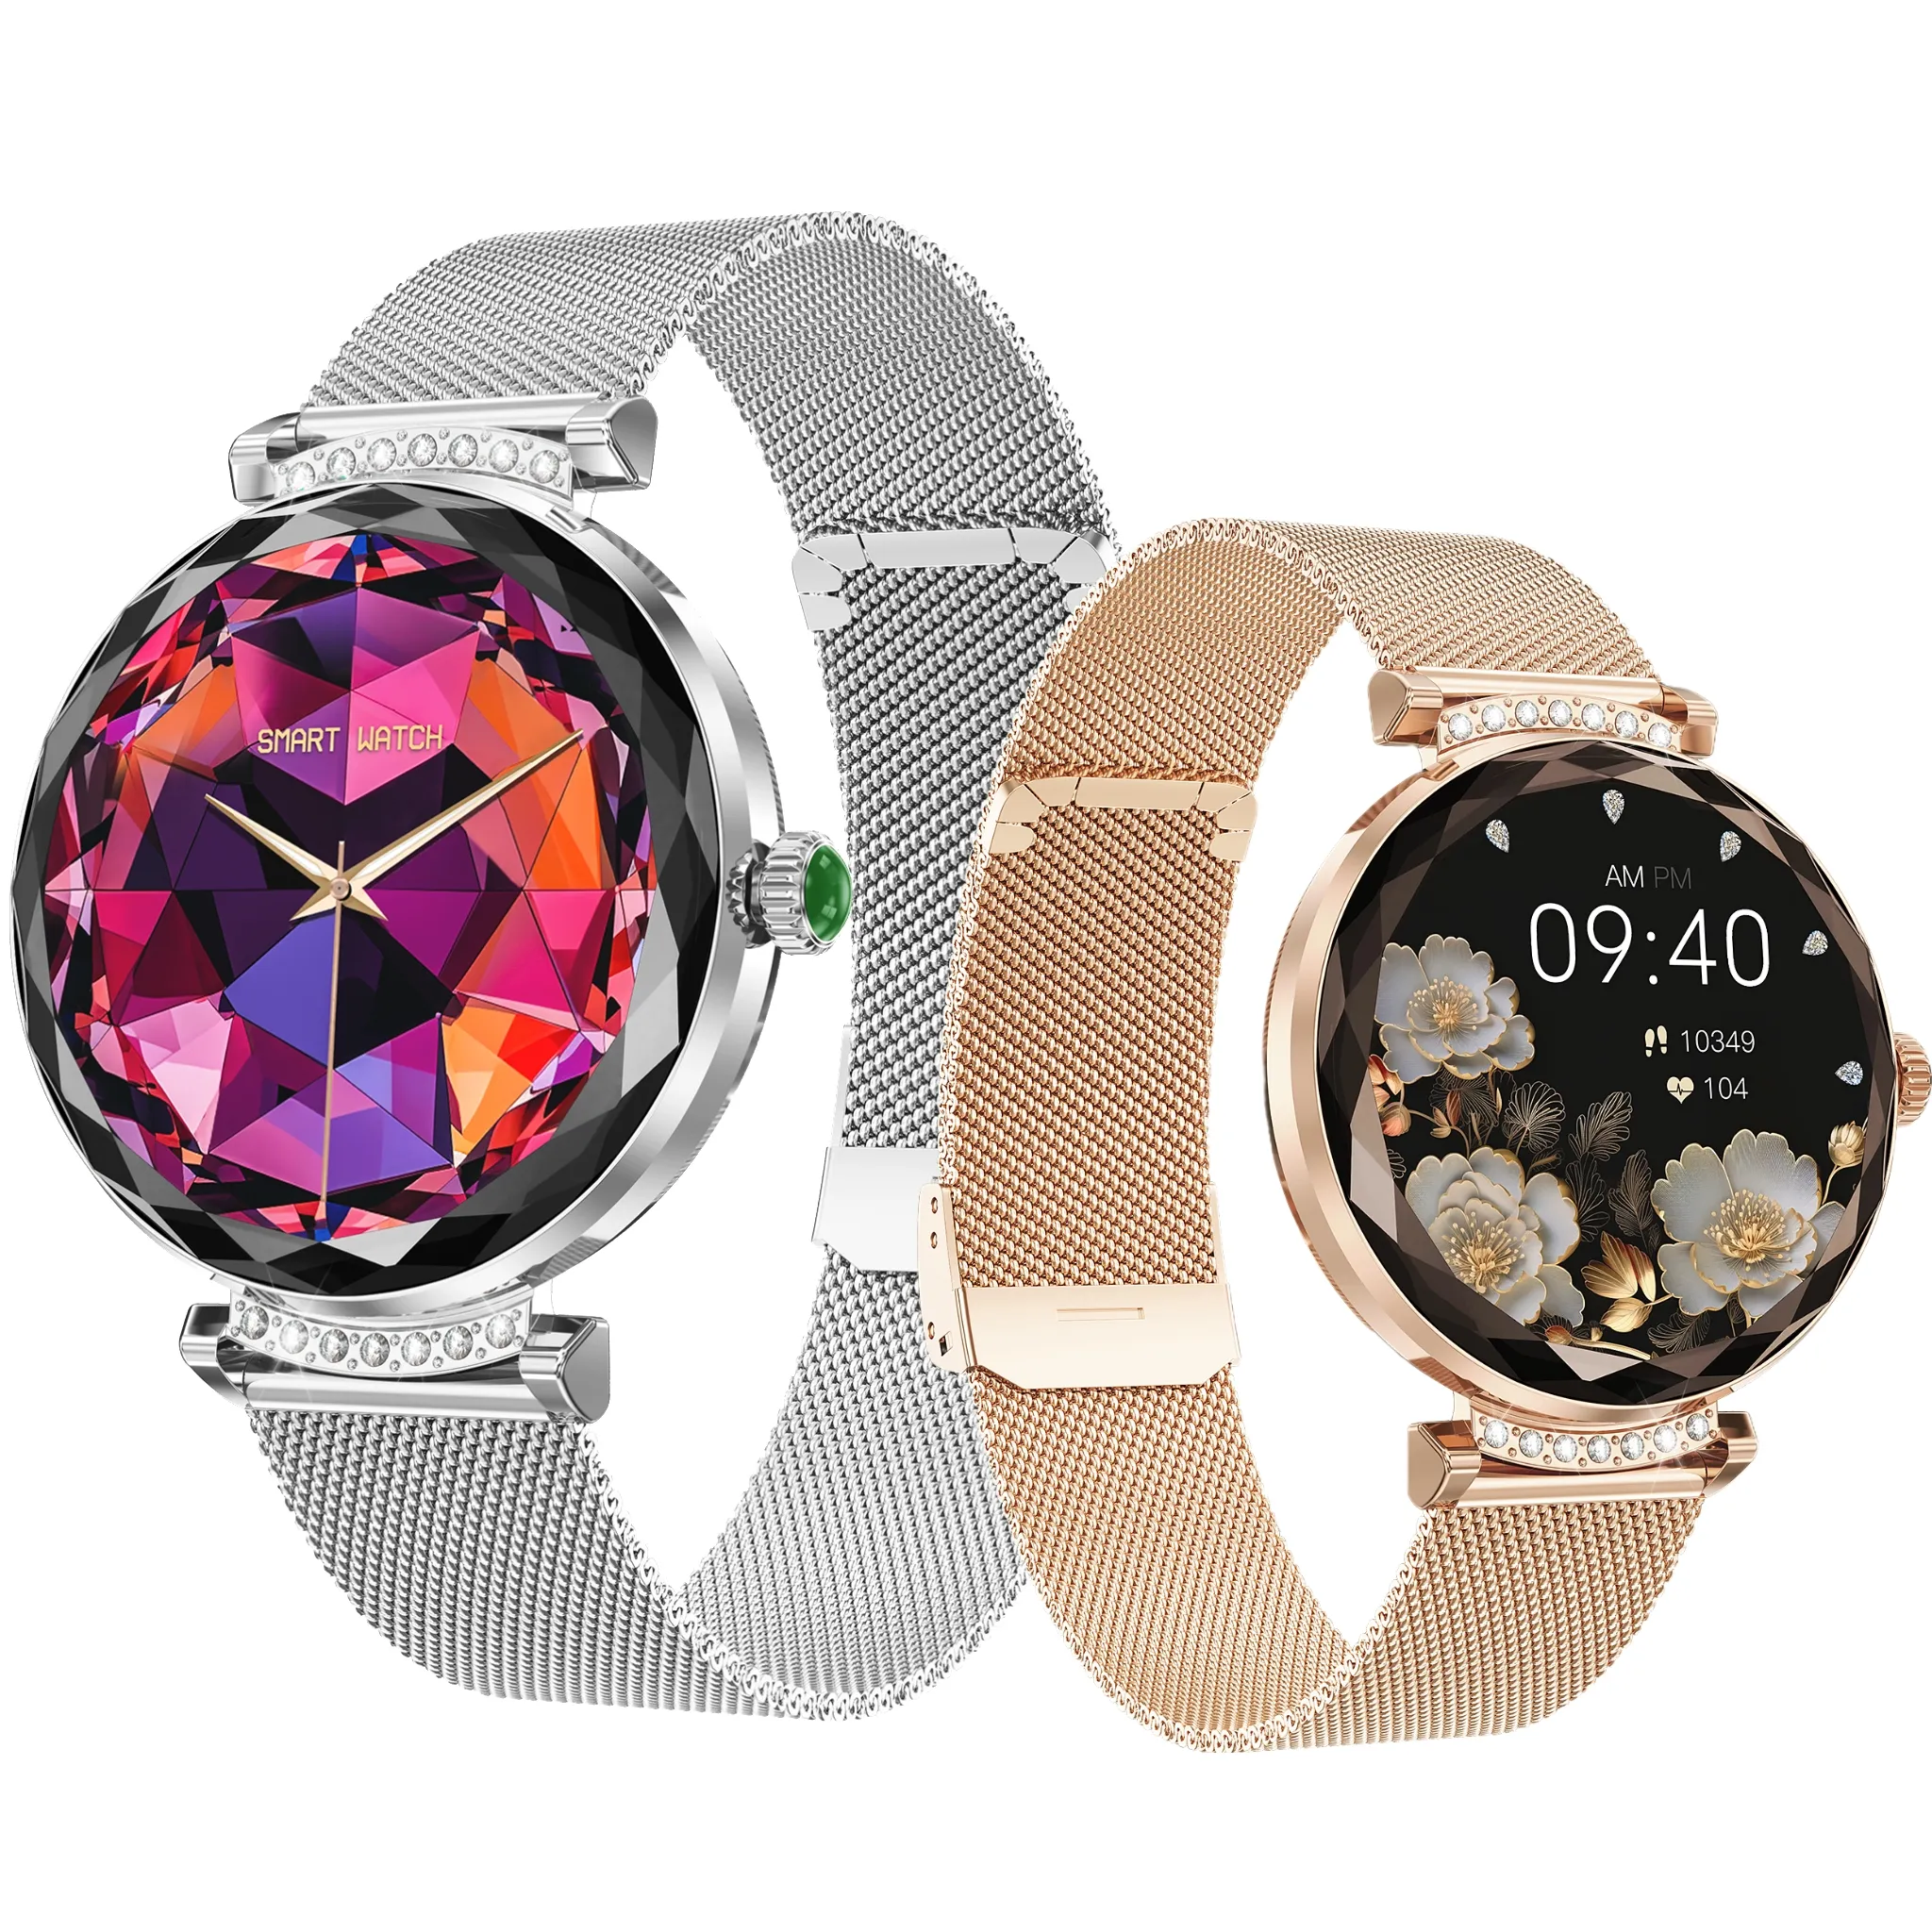 Nuovo di moda Gx7Pro orologio intelligente per il monitoraggio della pressione sanguigna promemoria sveglia Bt5.0 chiamata smartwatch